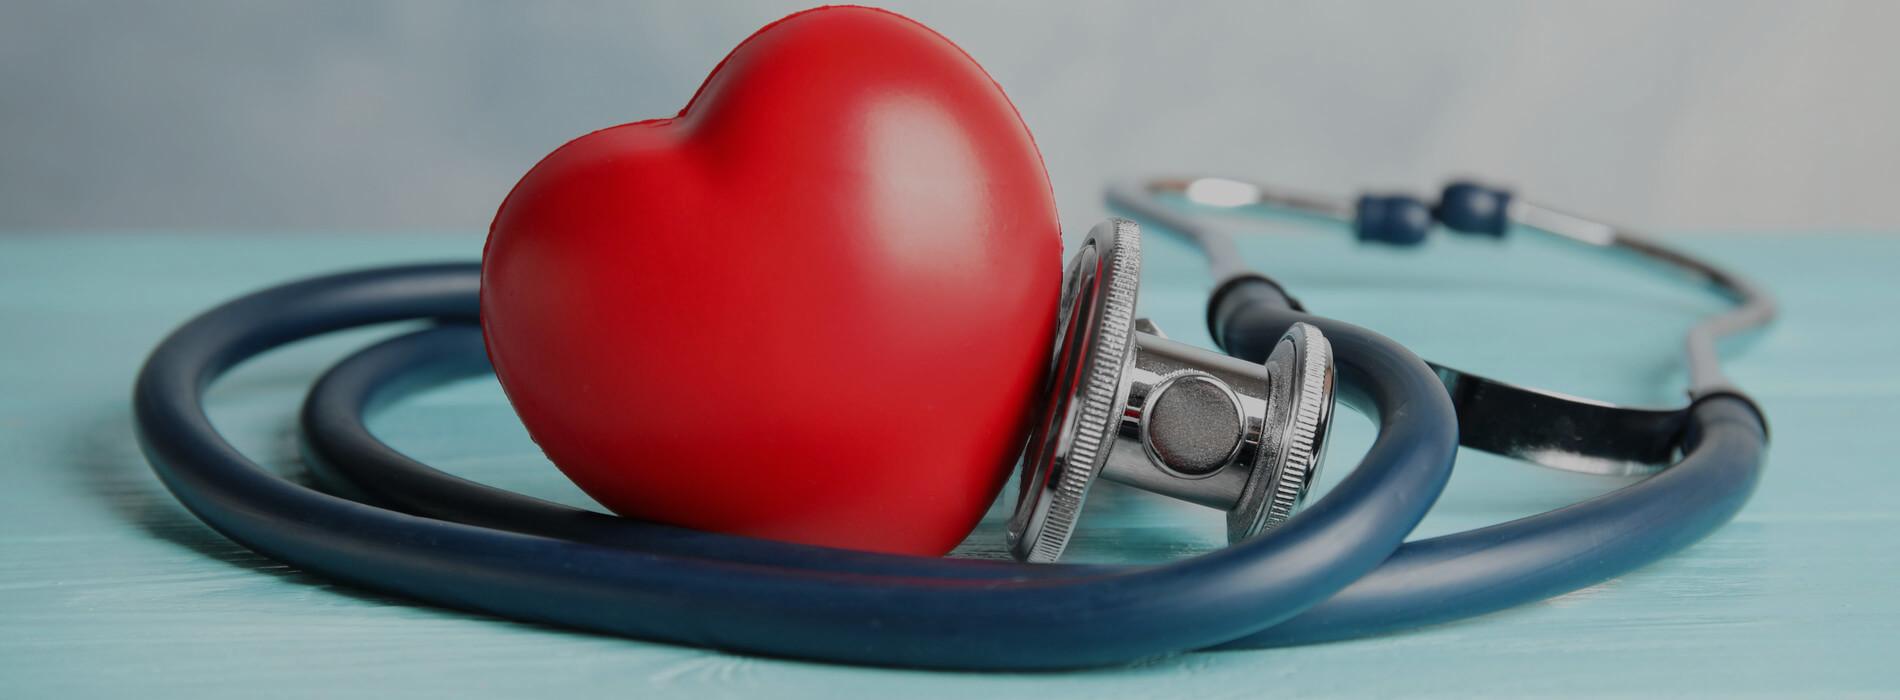 Najczęstsze choroby układu krążenia - miażdżyca, zawał serca i zakrzepica